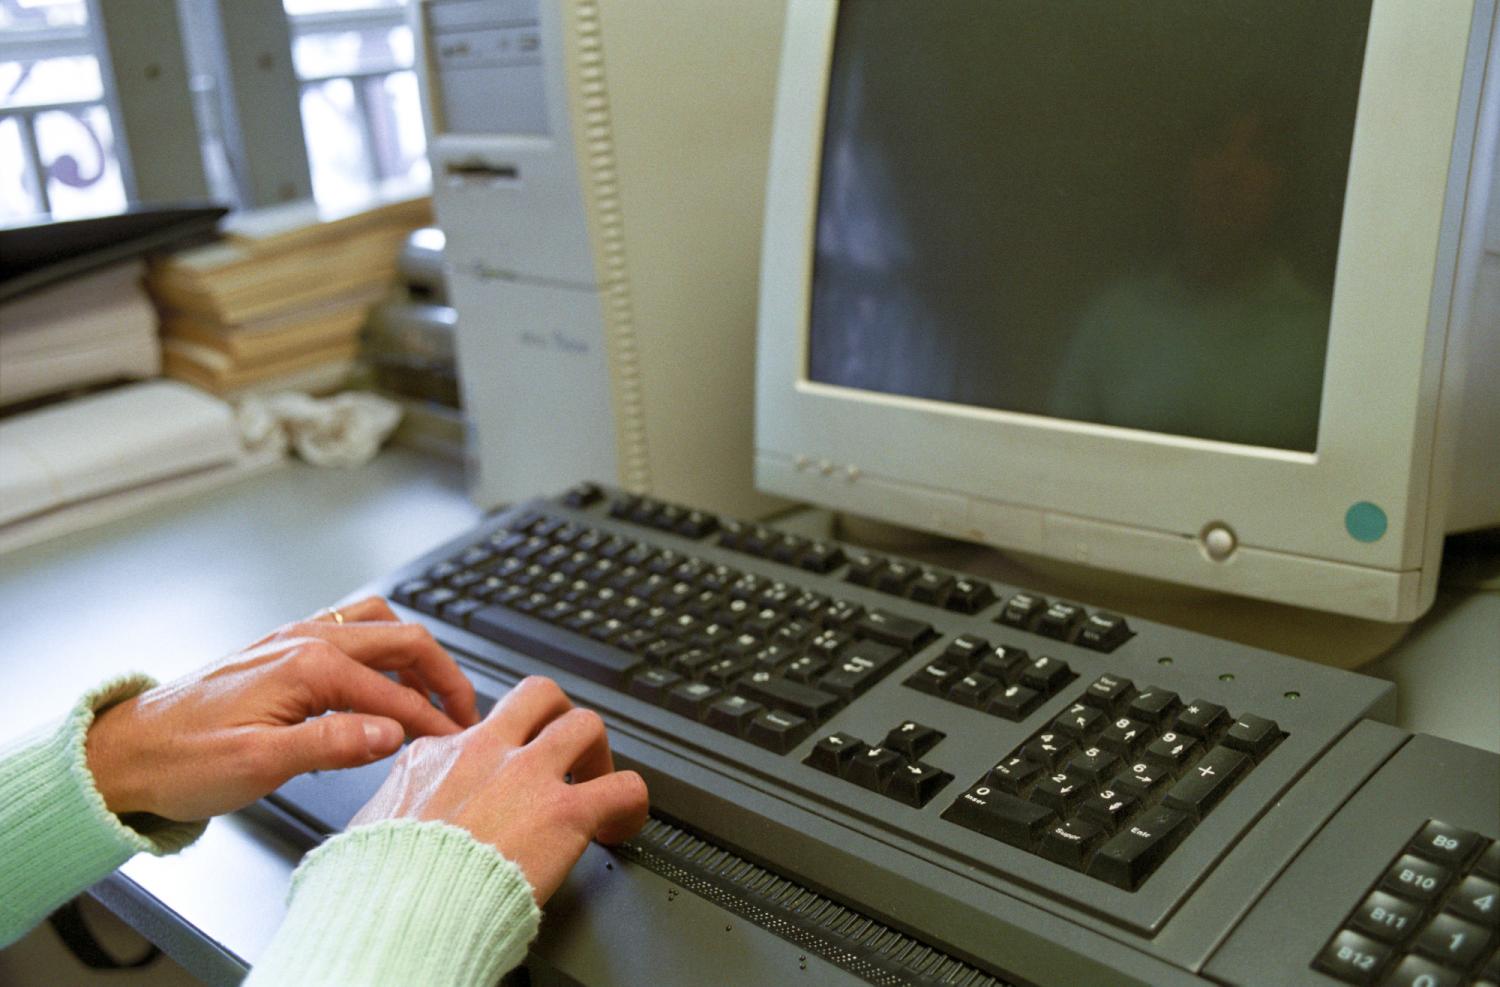 A l'imprimerie de l'Association Valentin Haüy, deux mains sur une plage braille, un écran d'ordinateur éteint : Valérie relit des documents. Paris, novembre 2005.